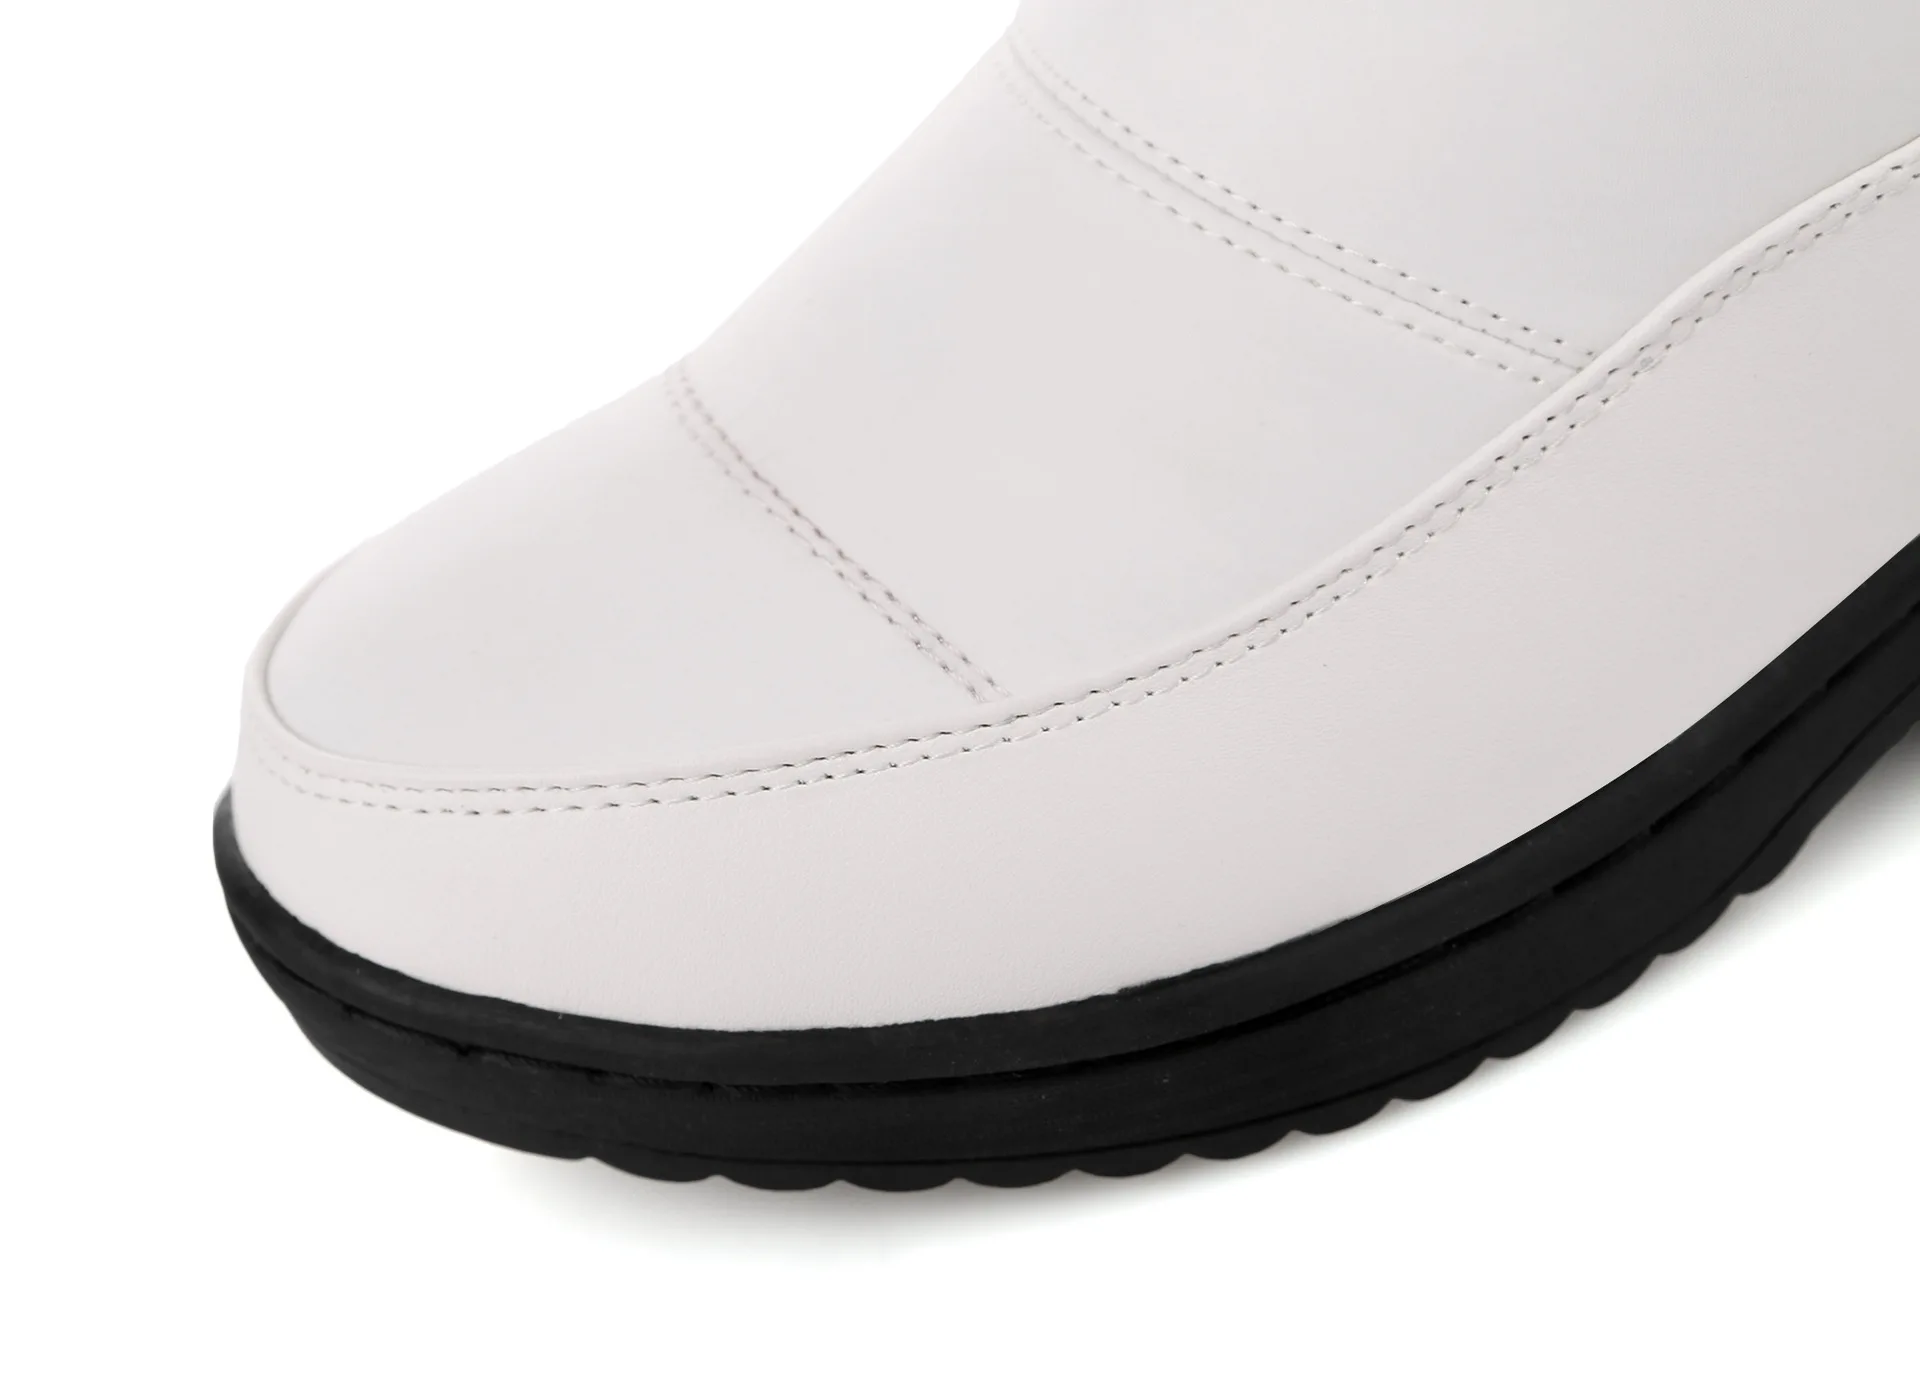 Зимняя женская обувь теплые ботинки на нескользящей подошве белые хлопковые ботинки зимние ботинки на толстой рифленой подошве женские ботинки HX-85